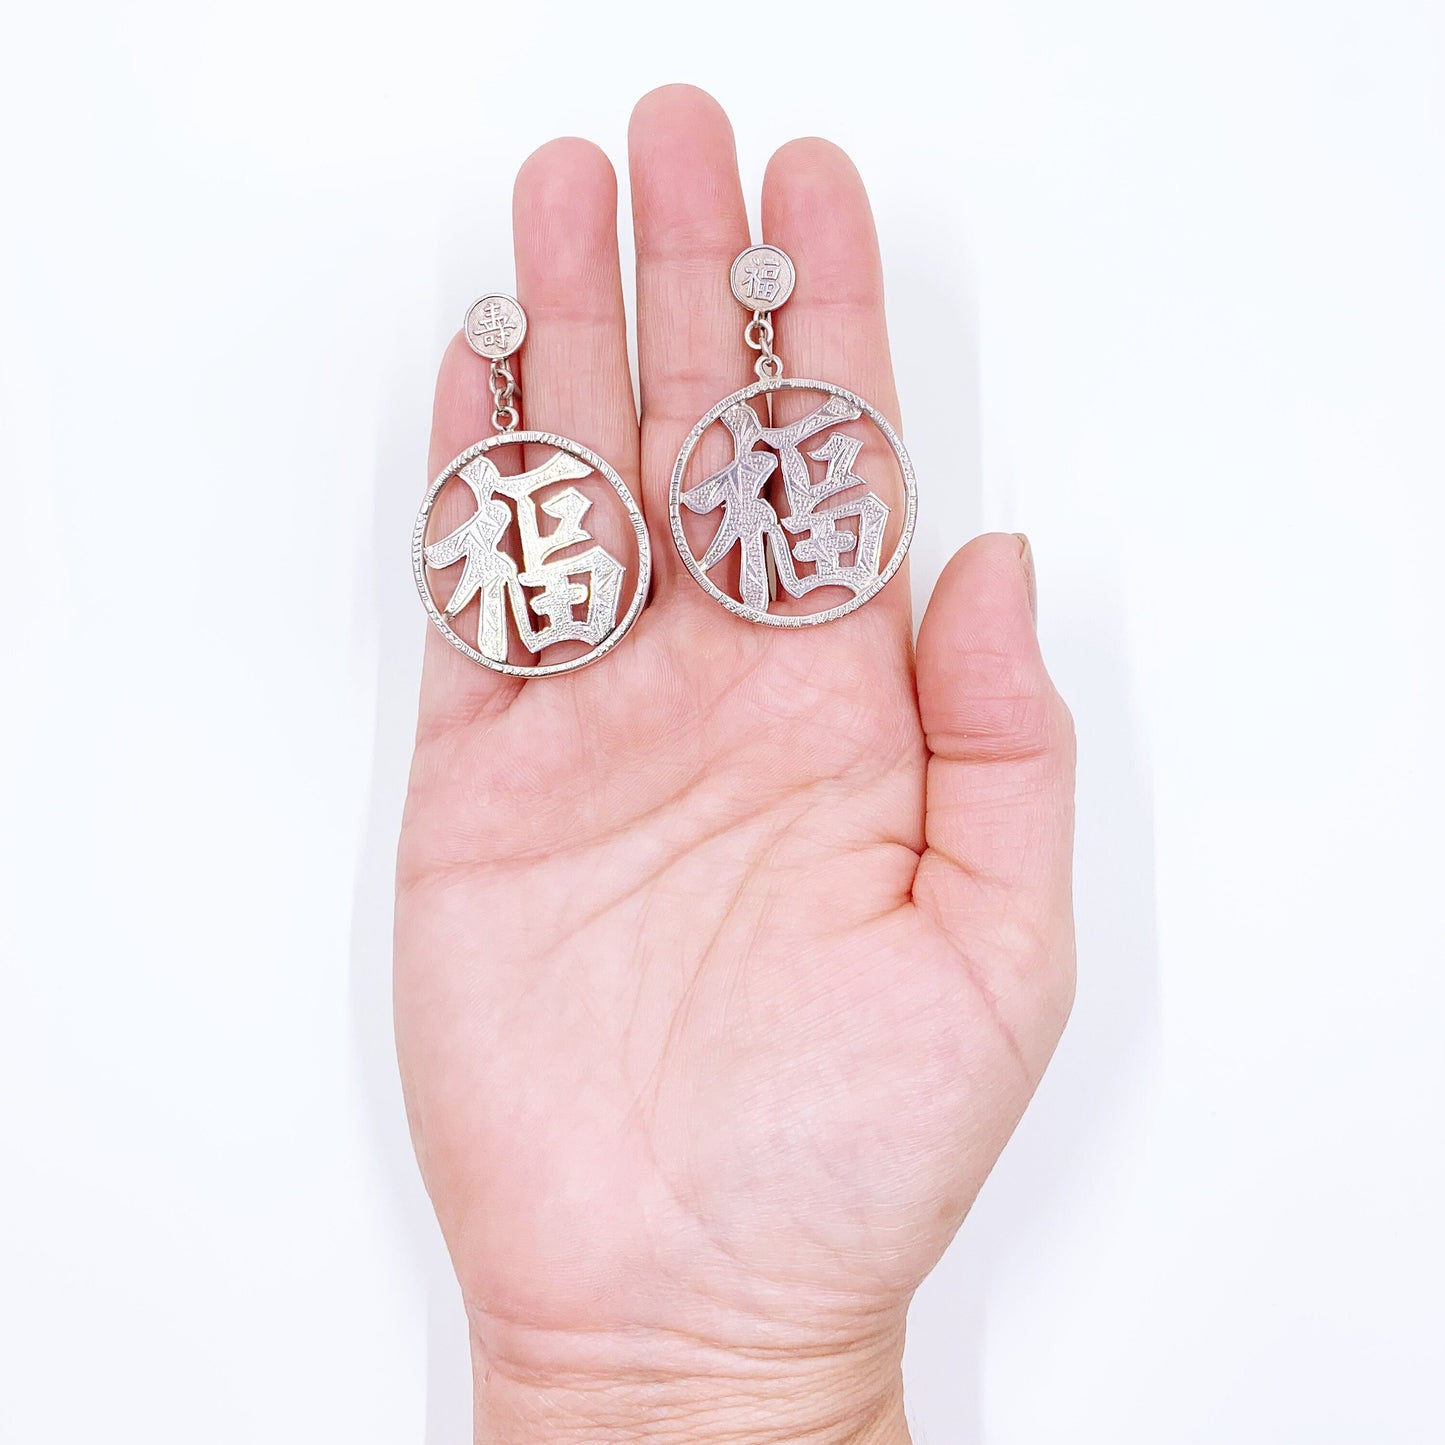 Vintage Sterling Good Fortune & Longevity Screw Back Earrings | Chinese Character | Made In Hong Kong | W.K. Sterling Earrings